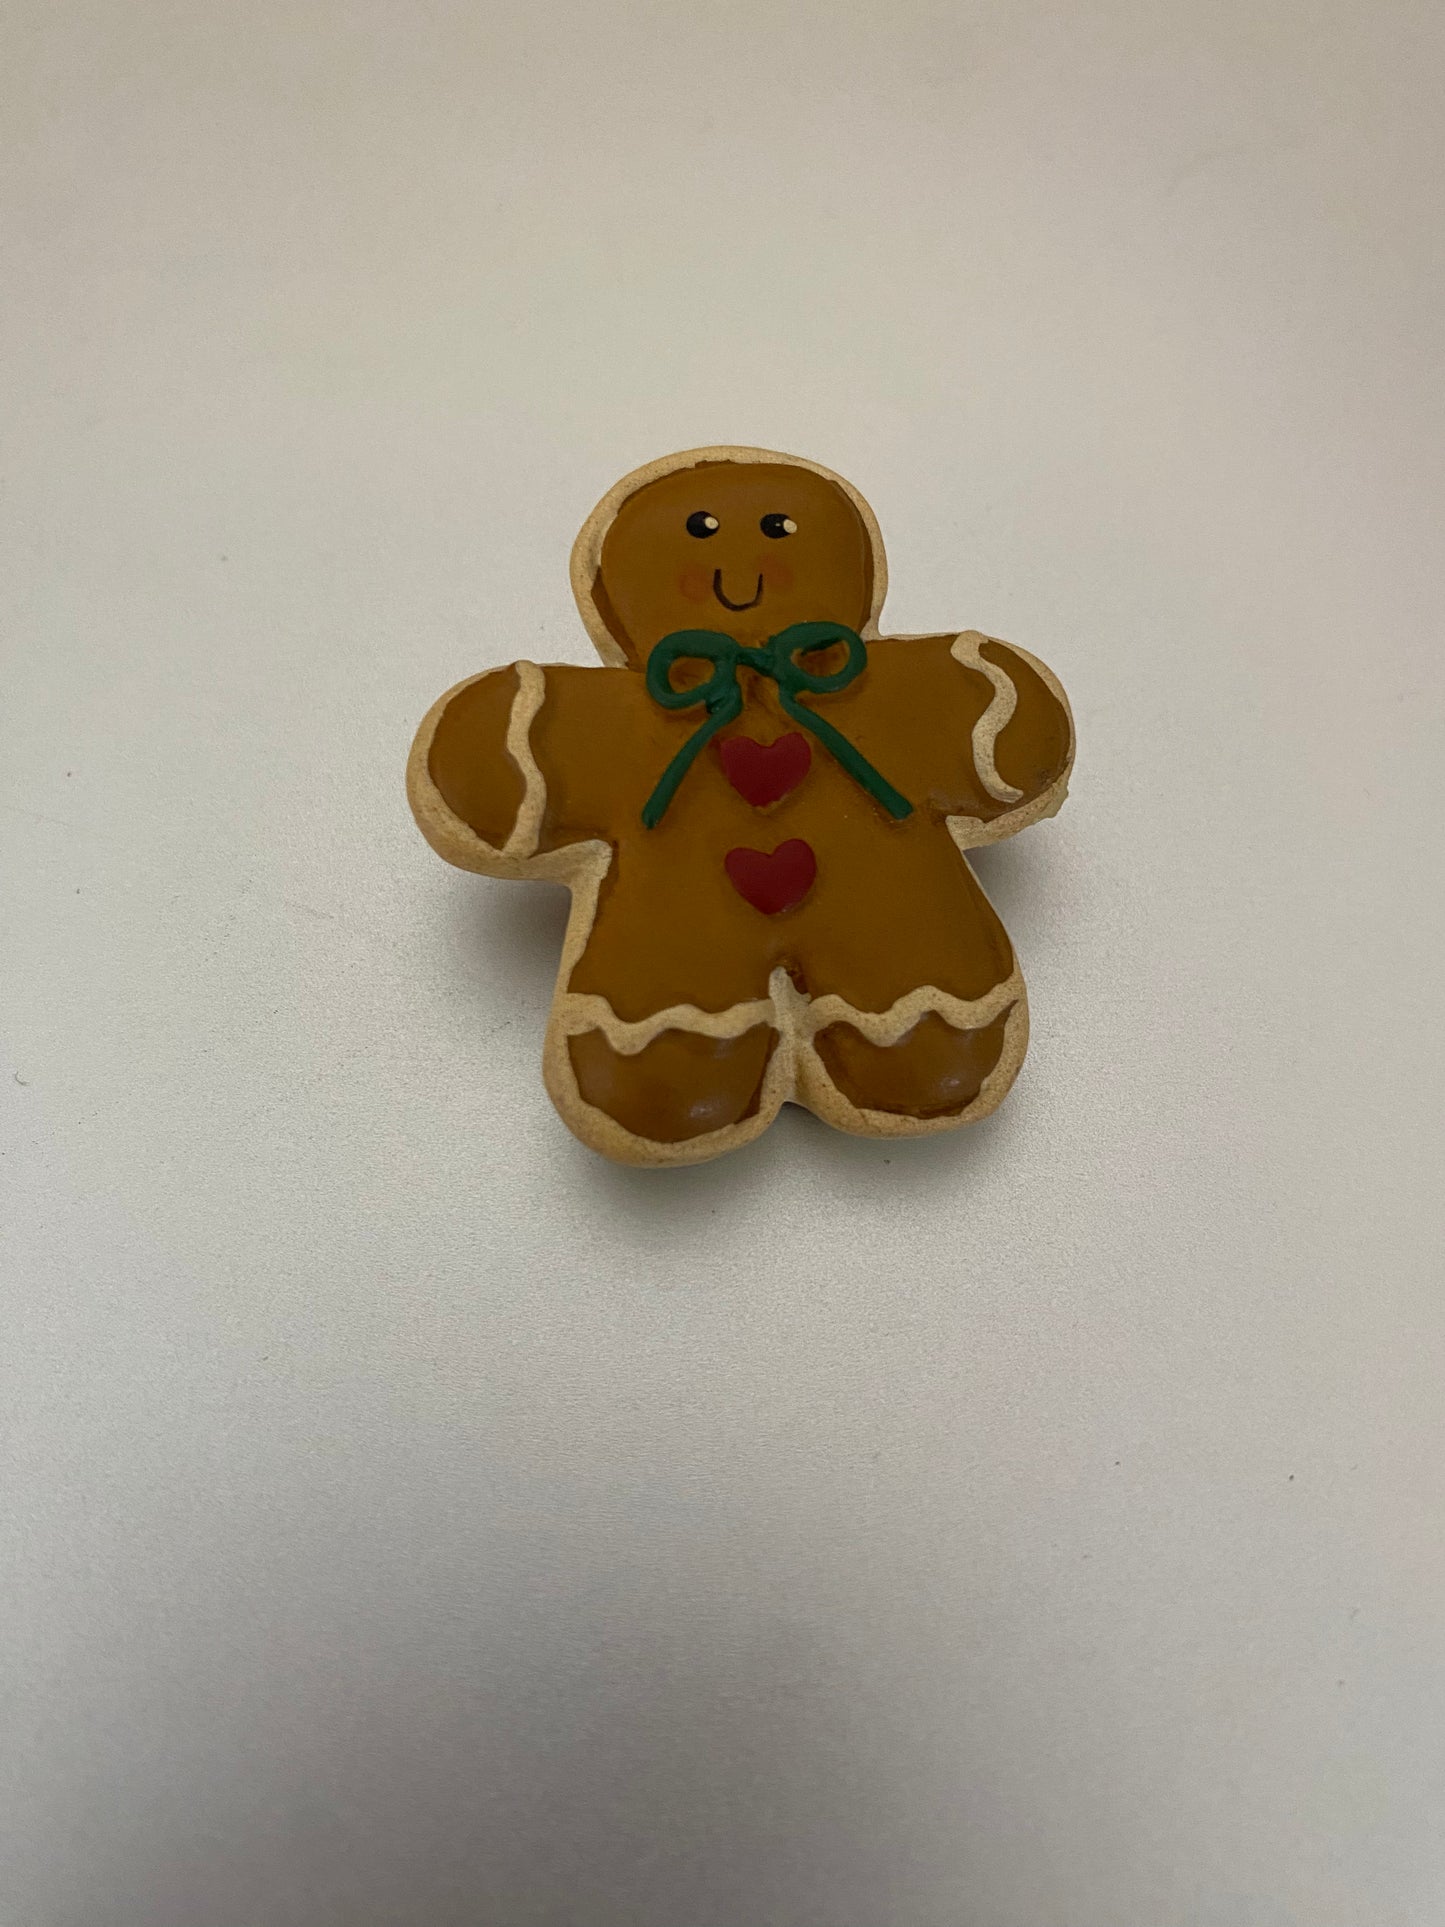 Resin Gingerbread Man Pin Brooch